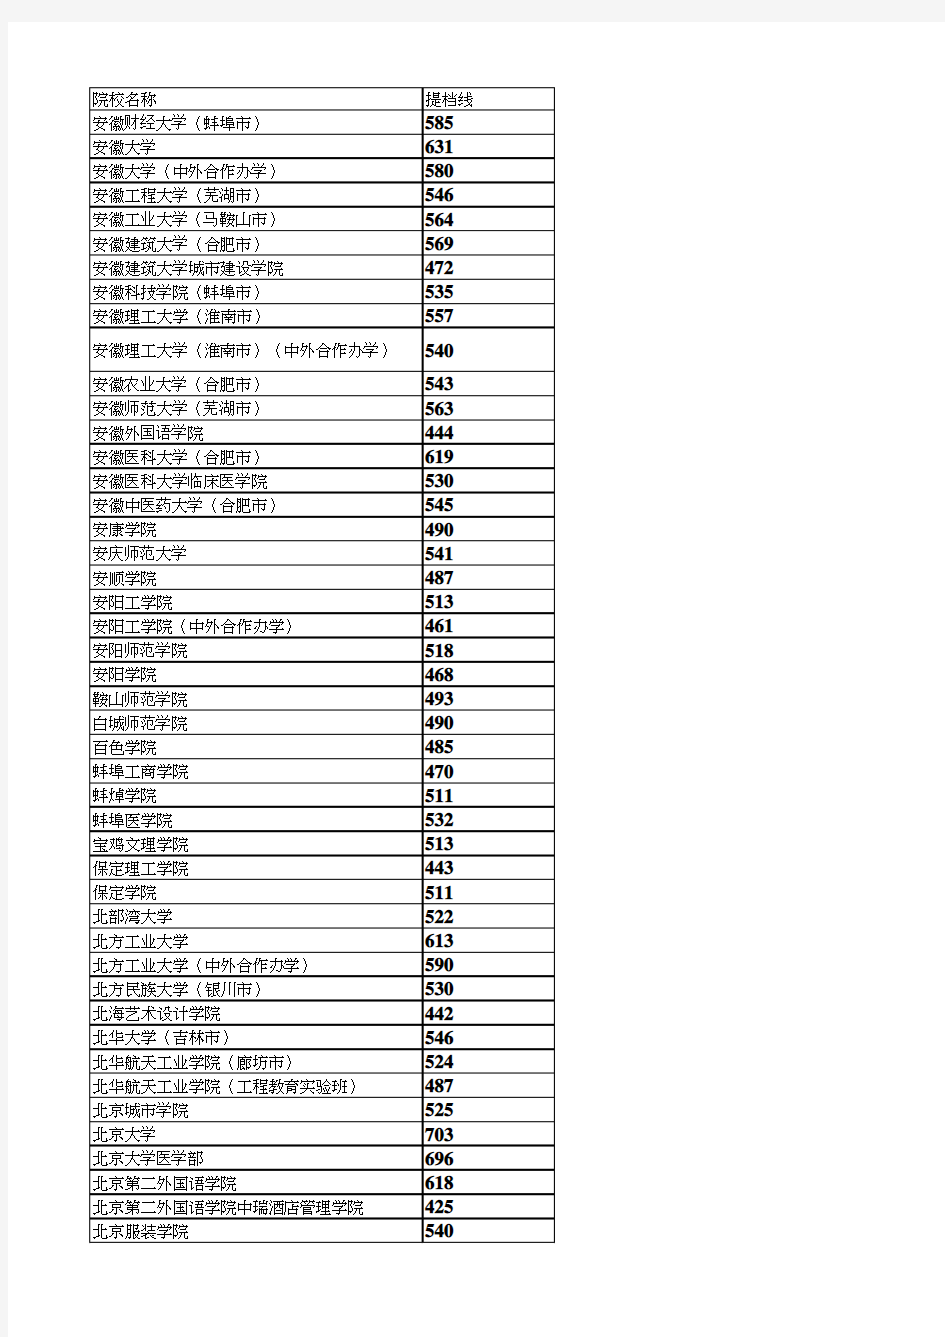 2020年河北省本科批理工一志愿平行投档最低分统计表